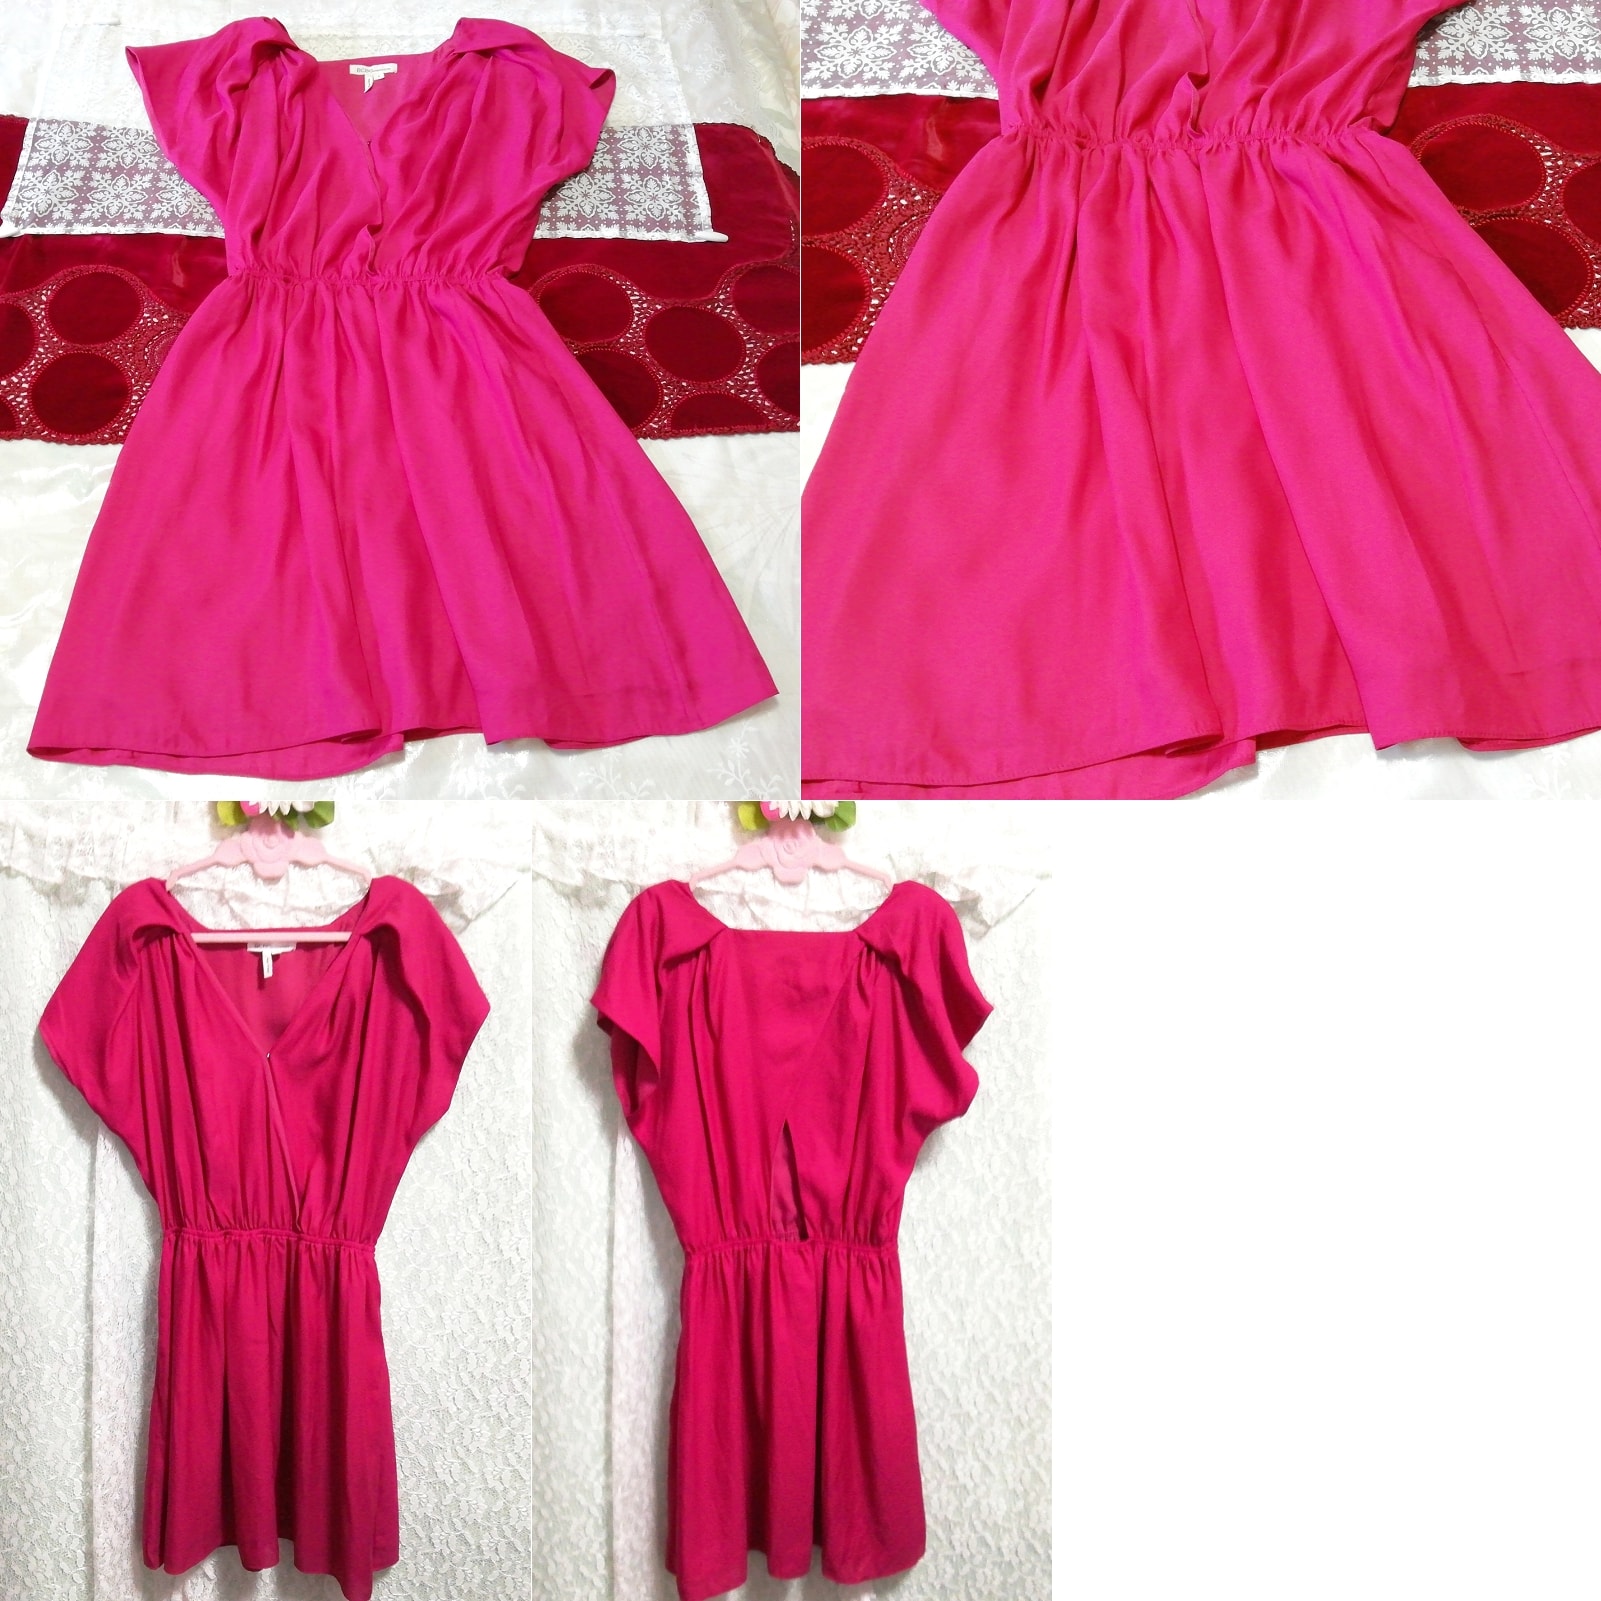 Пурпурно-розовое платье-туника без рукавов и пеньюара с открытой спиной и ночной рубашкой, туника, без рукавов, без рукавов, размер м